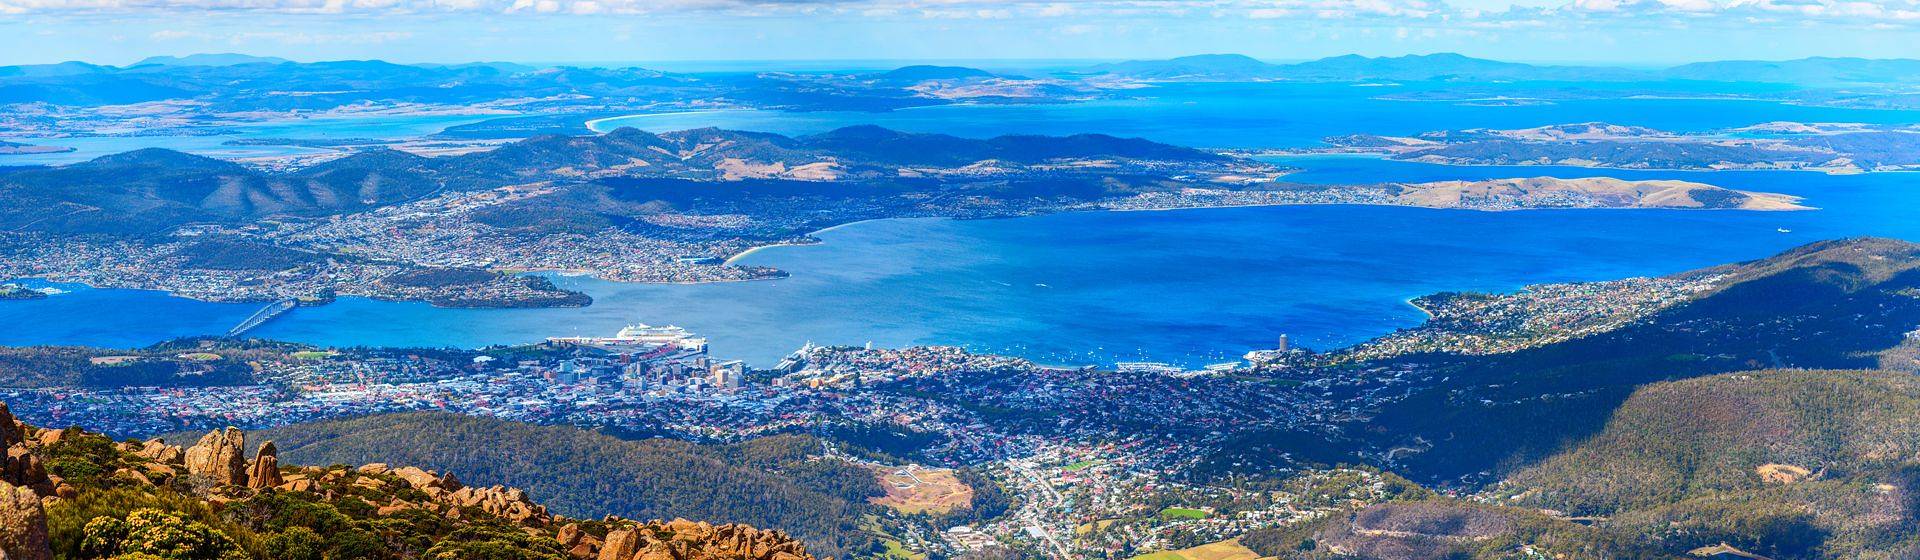 Holidays to Hobart Image